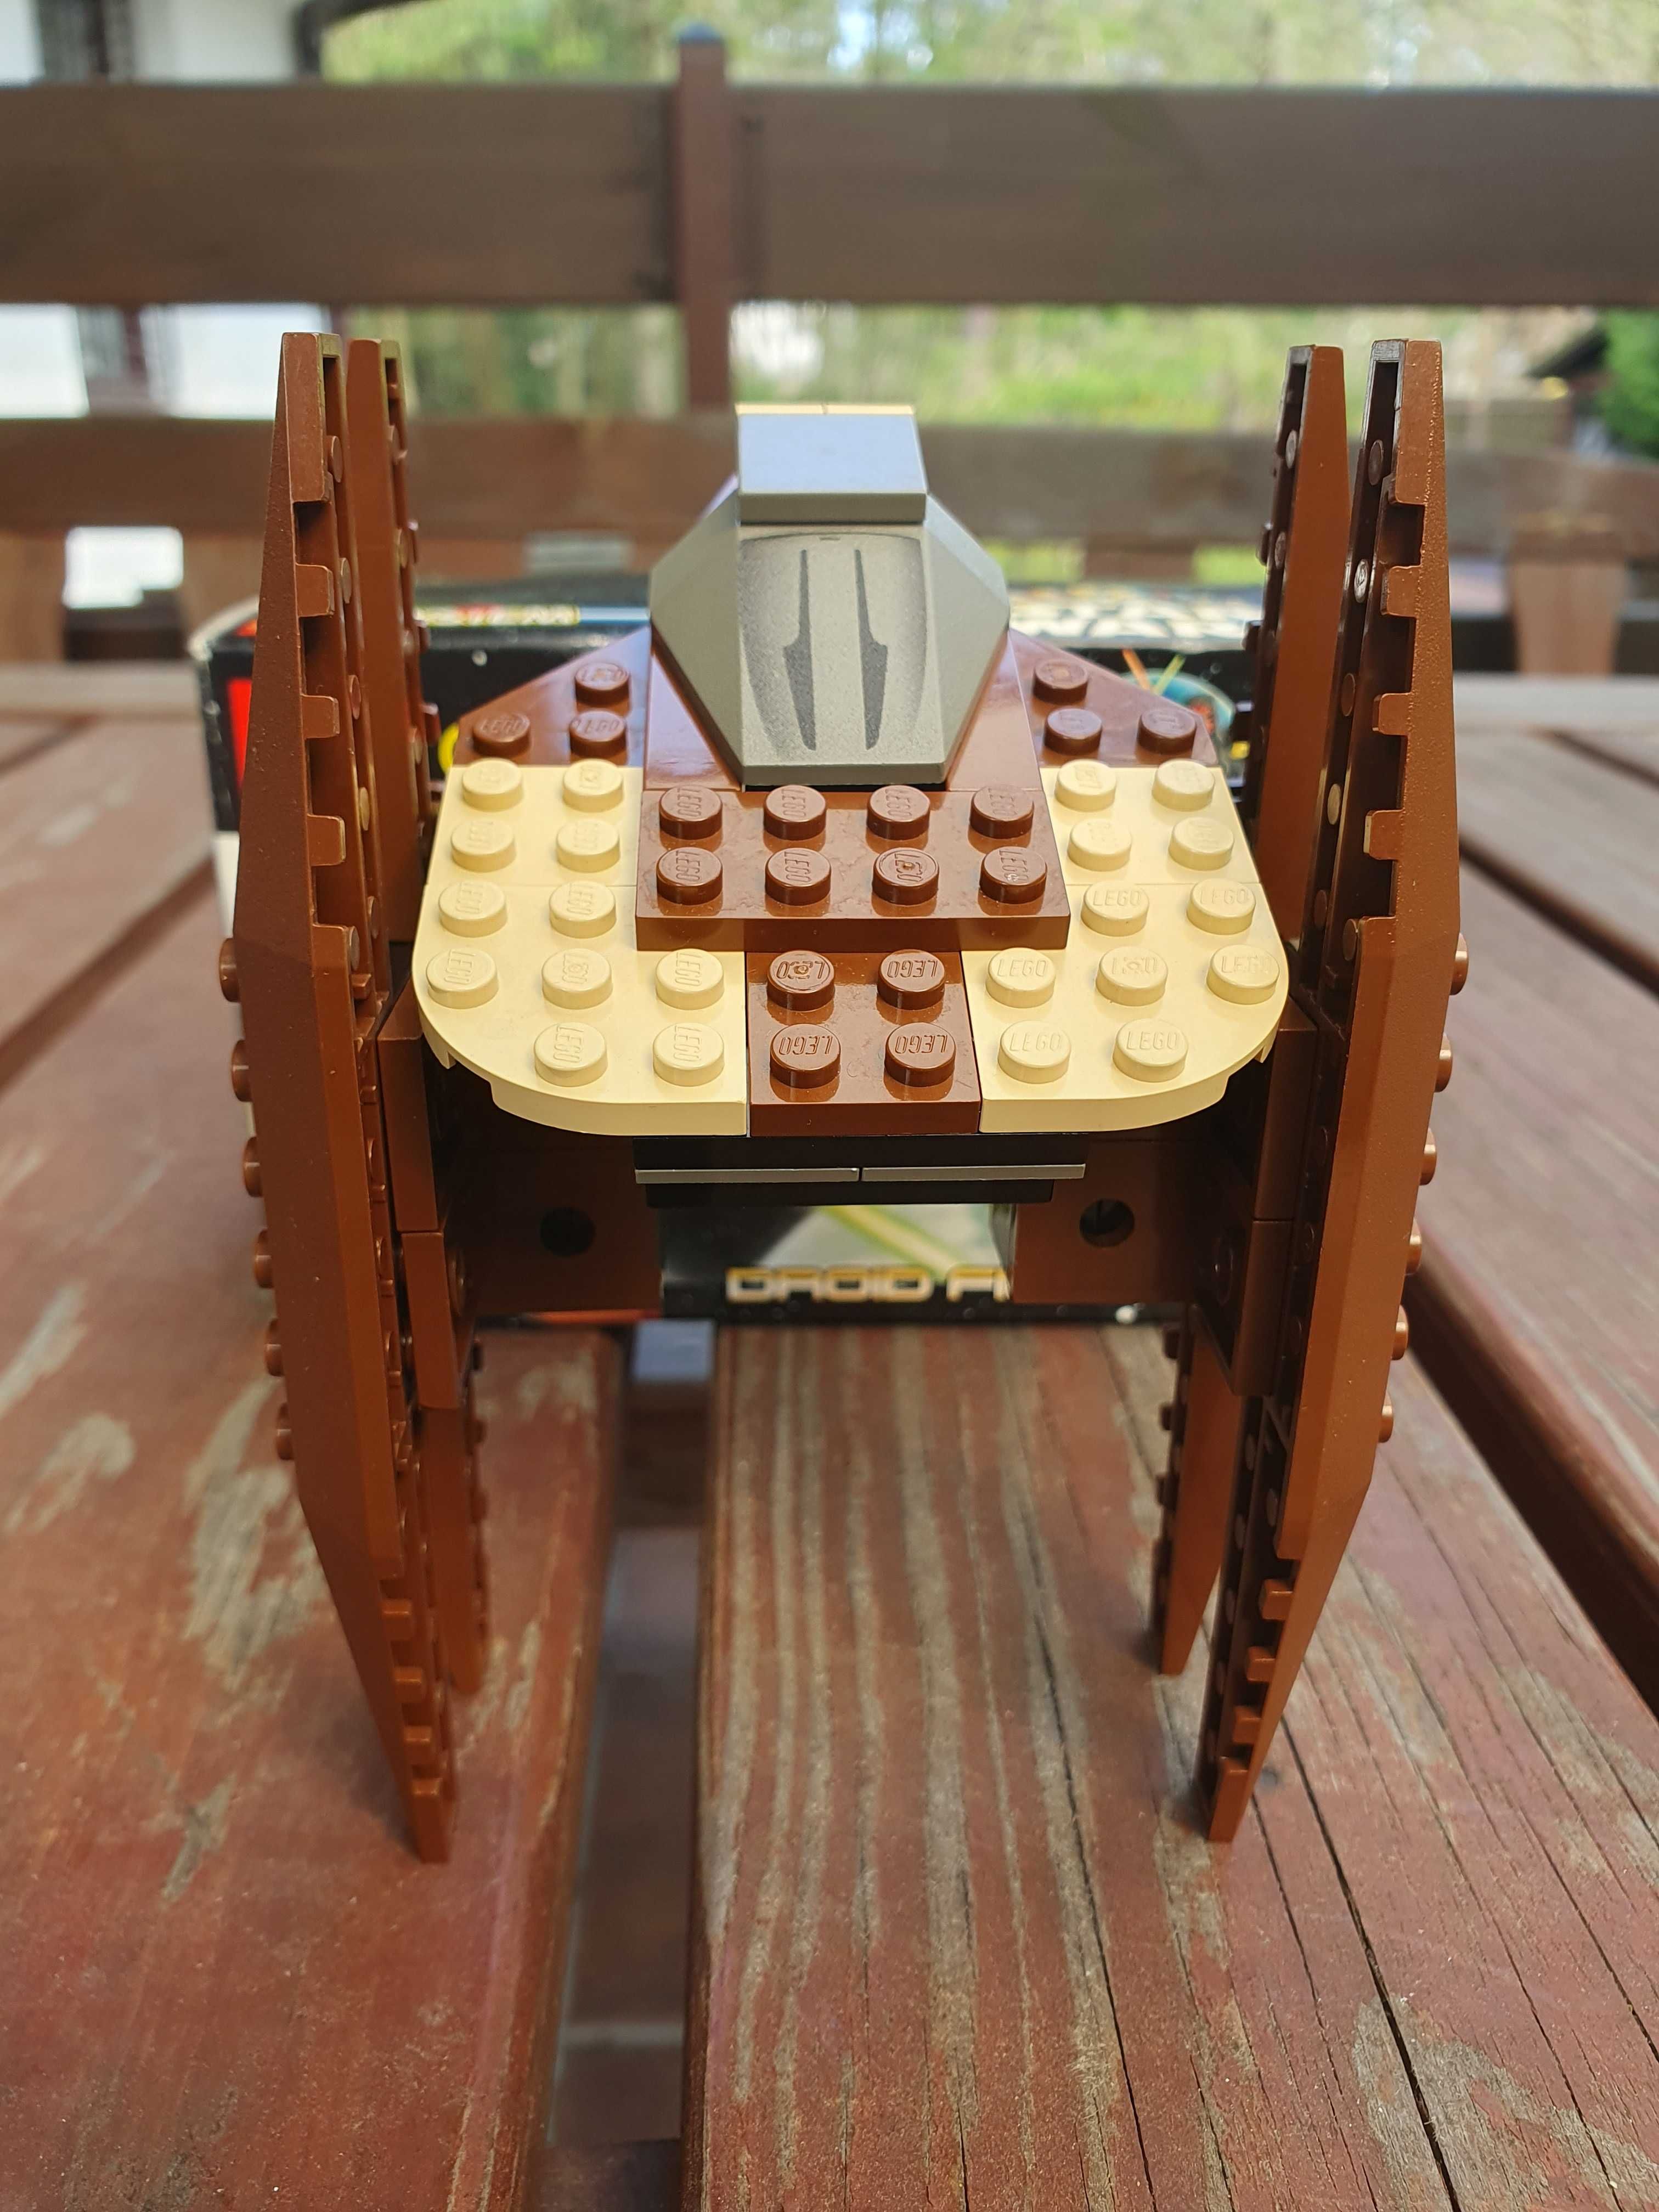 Lego 7111 Star Wars